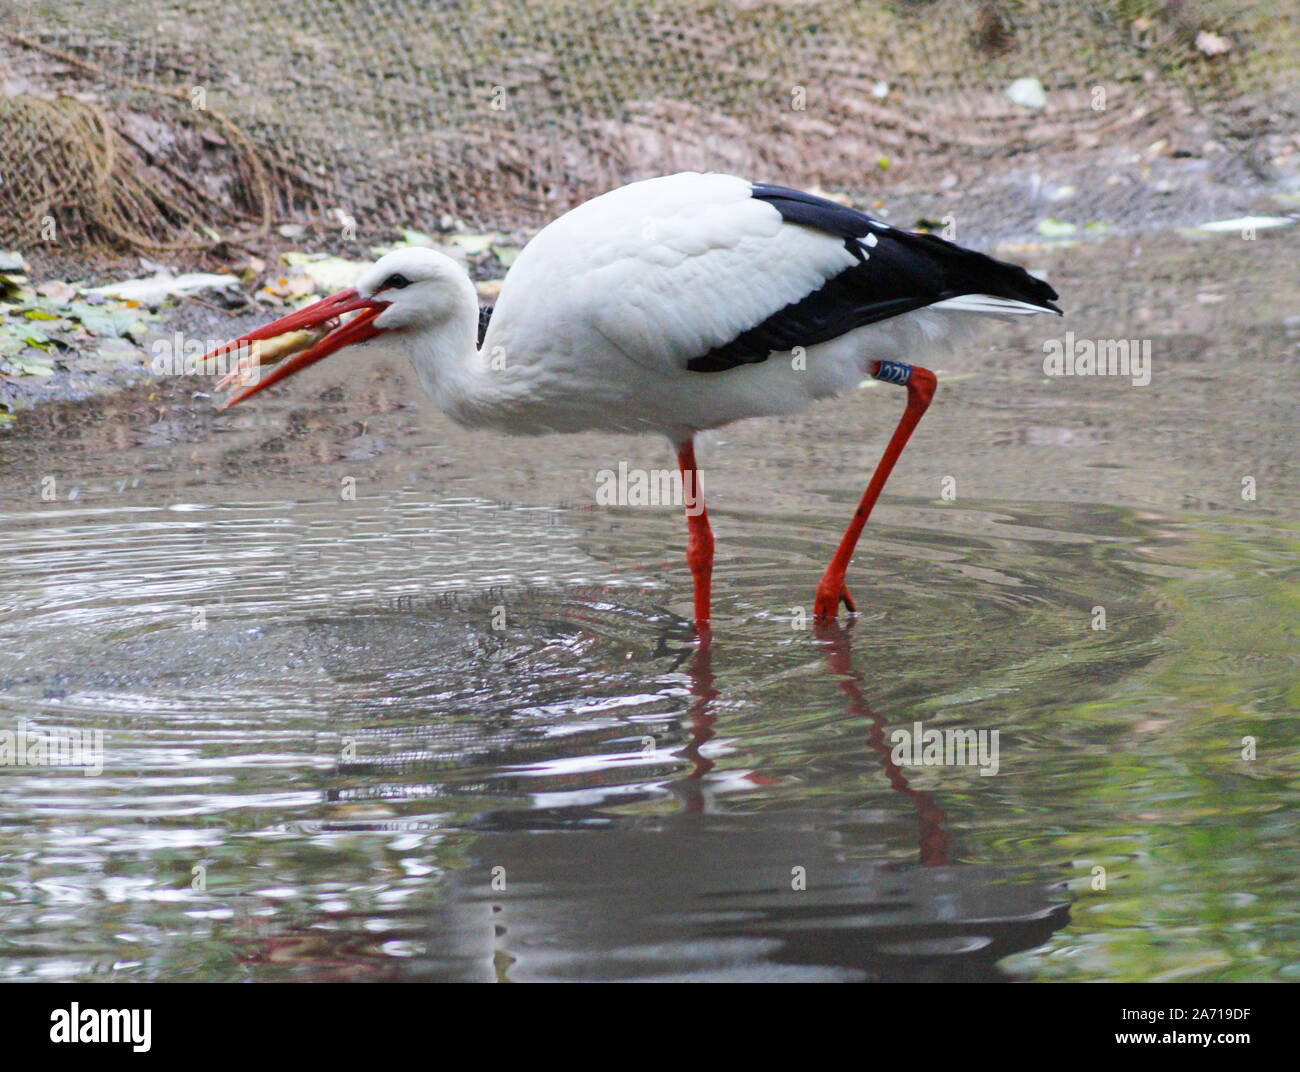 Une belle stork avec de longues pattes et un long bec et un poussin dans son bec Banque D'Images